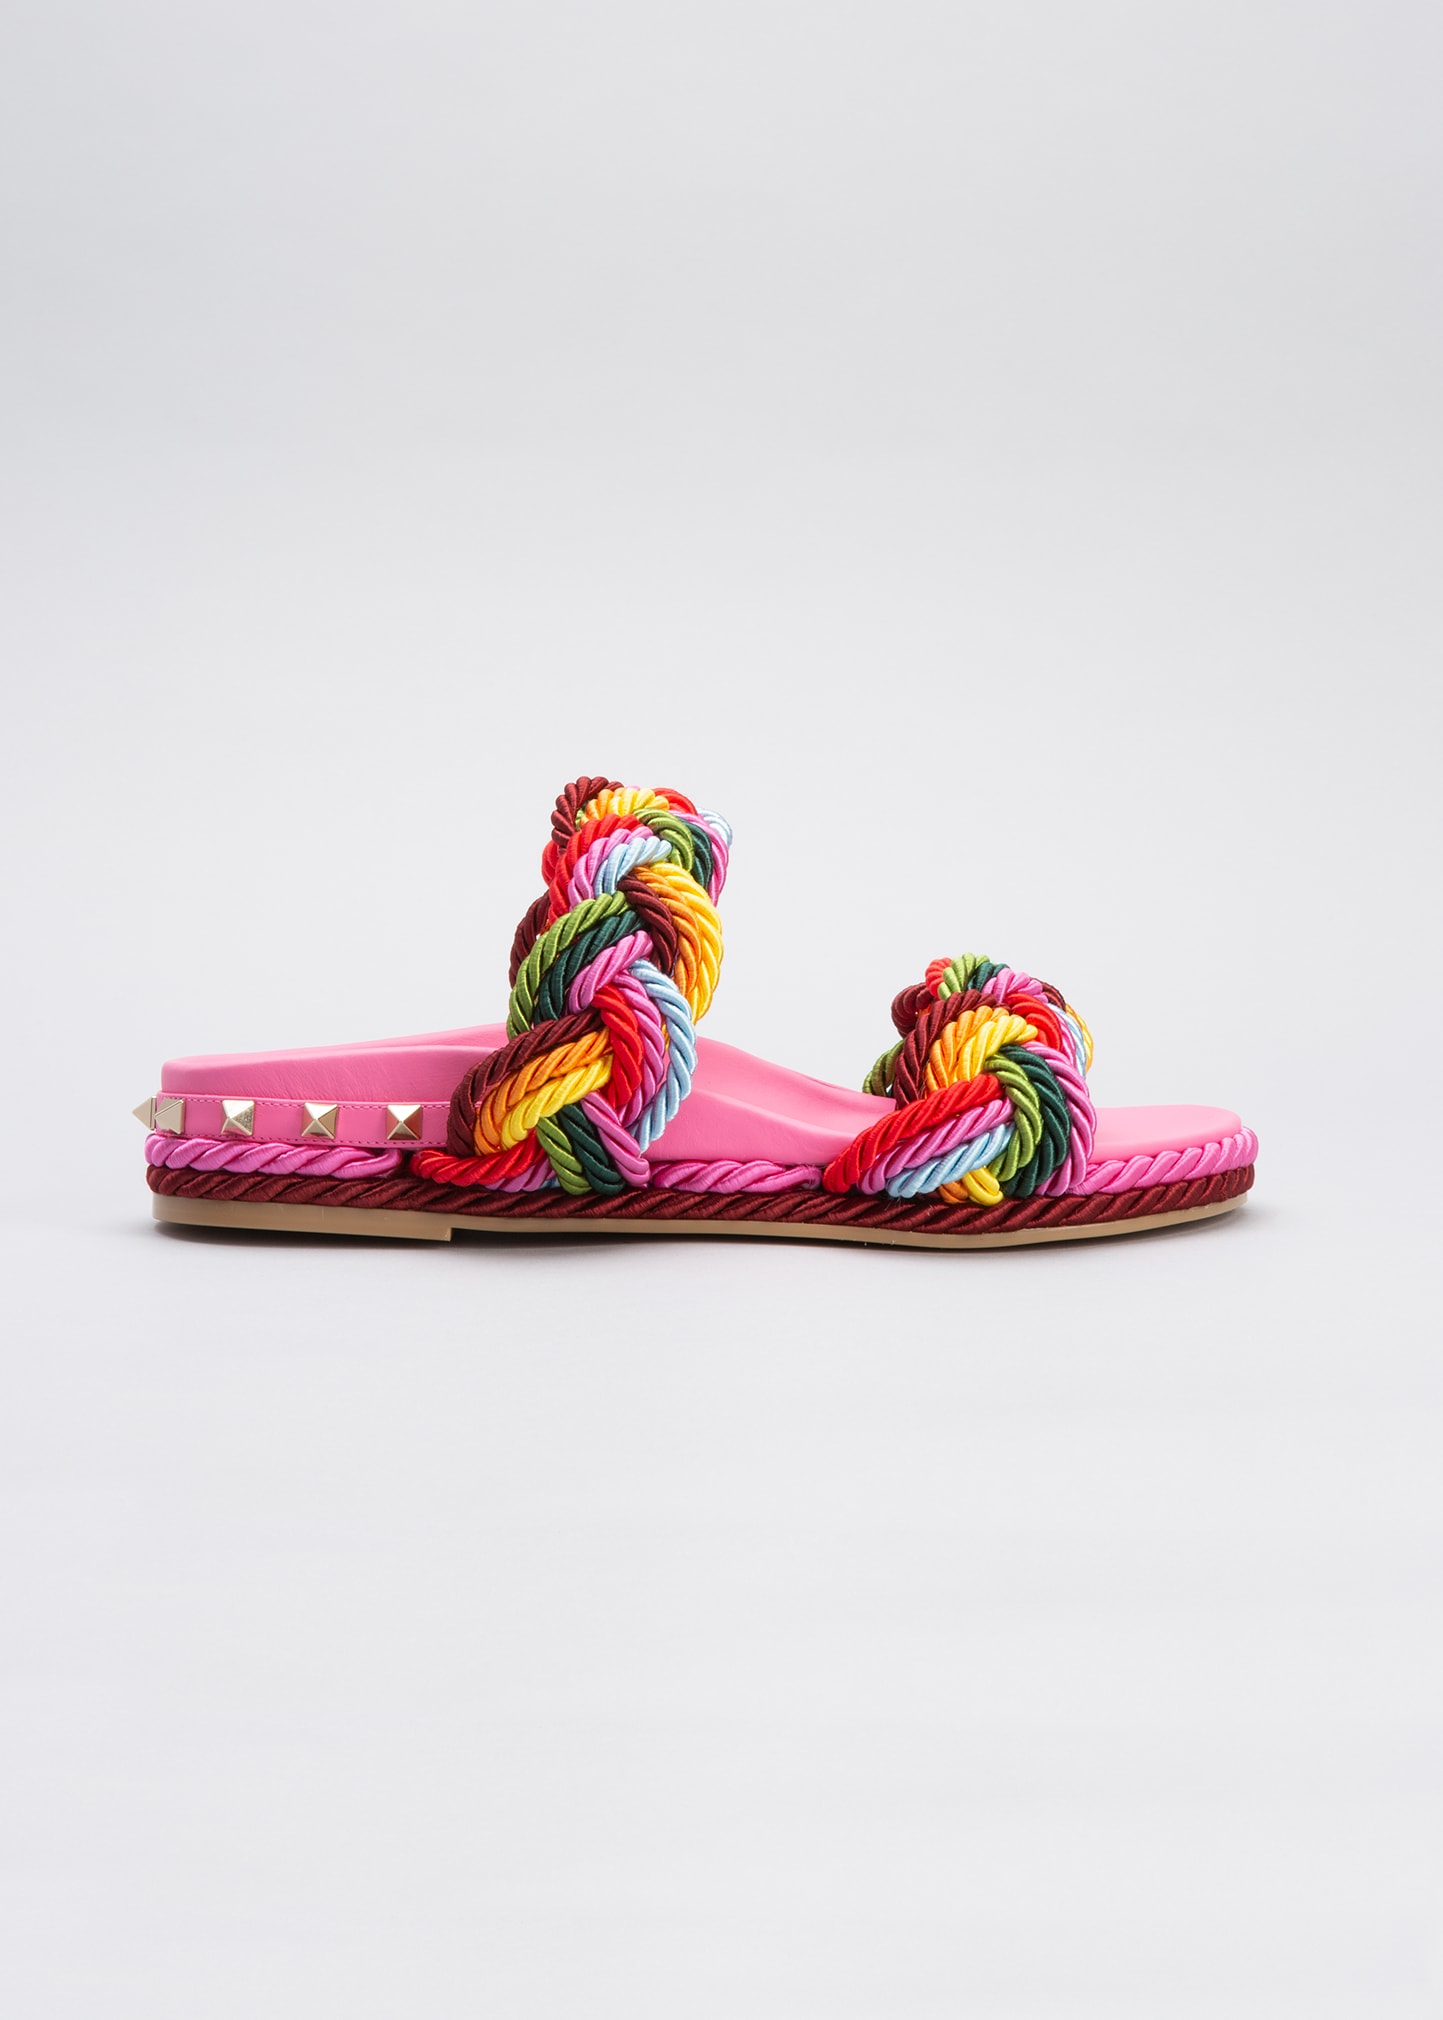 Valentino Garavani Women's Braided Espadrille Slide Sandals In Pink Multi